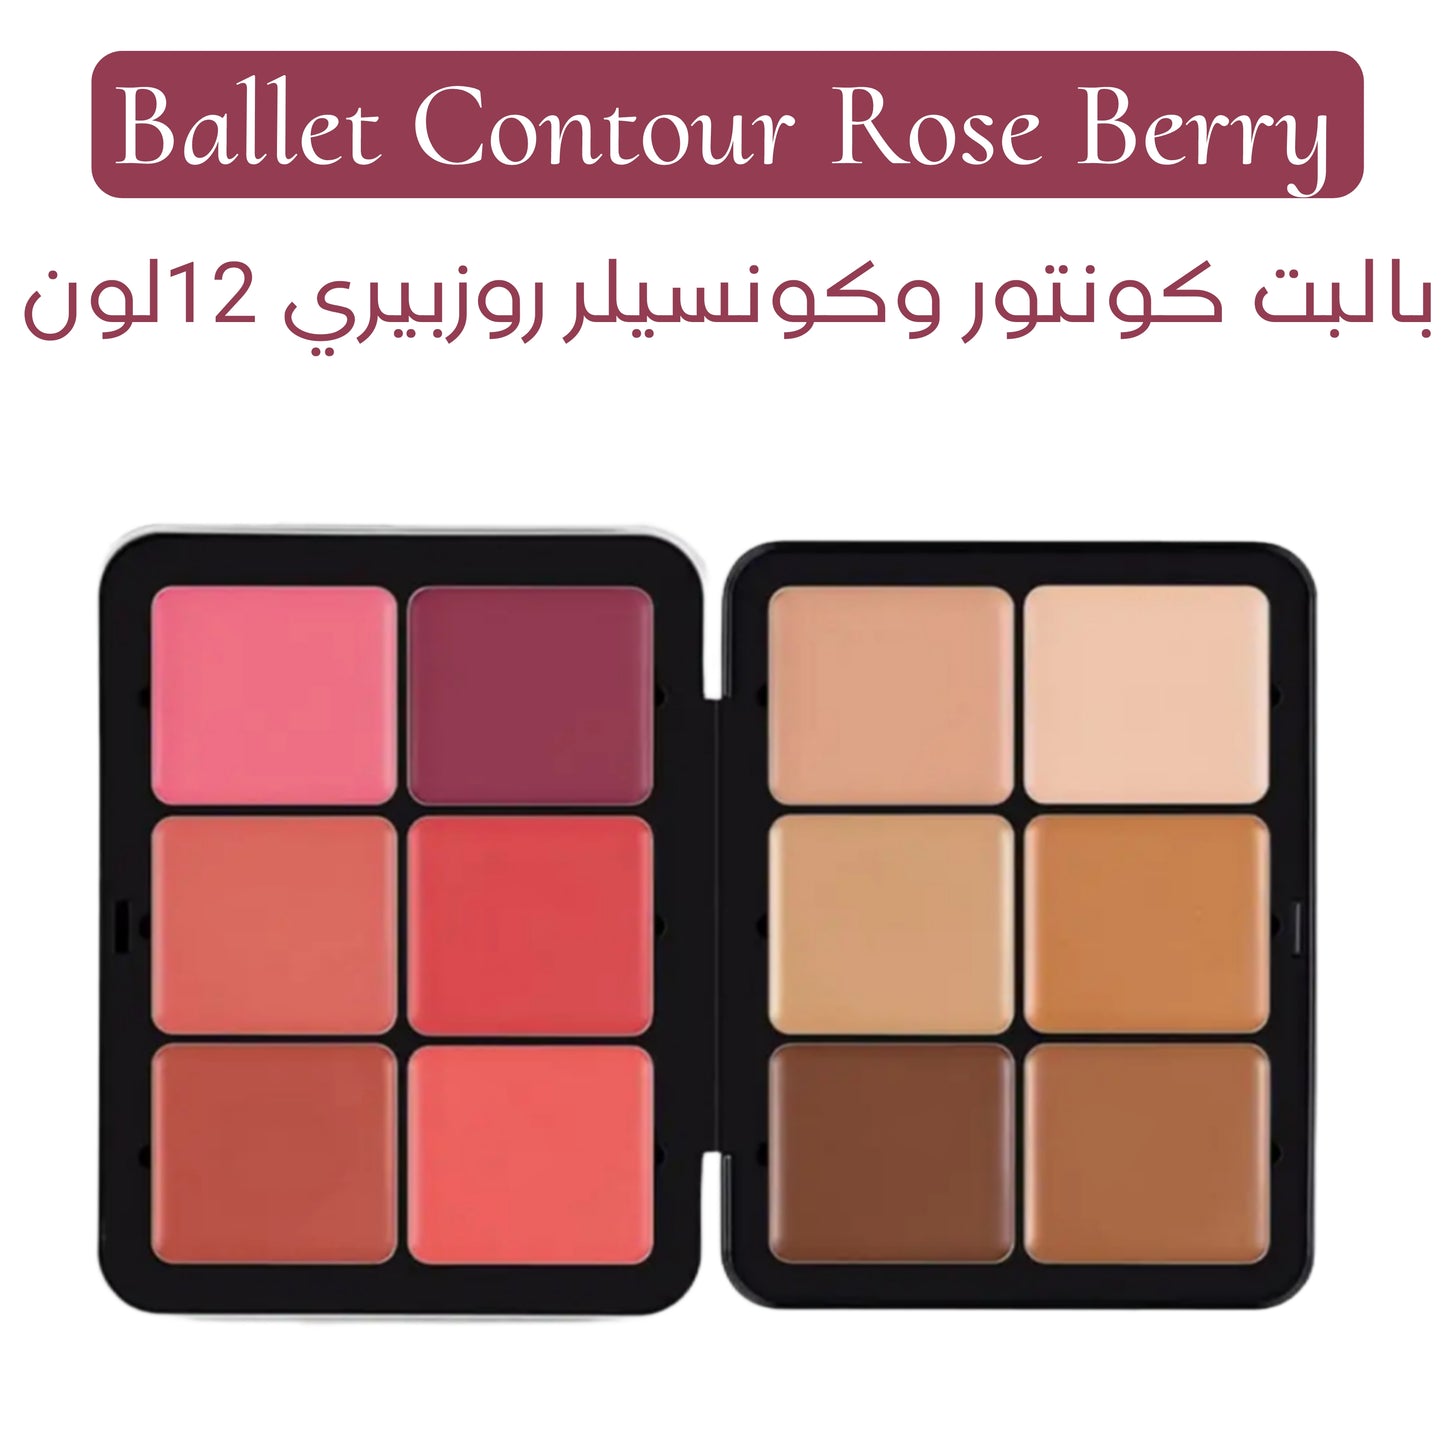 Contour Rose berry ballet - 12 colors